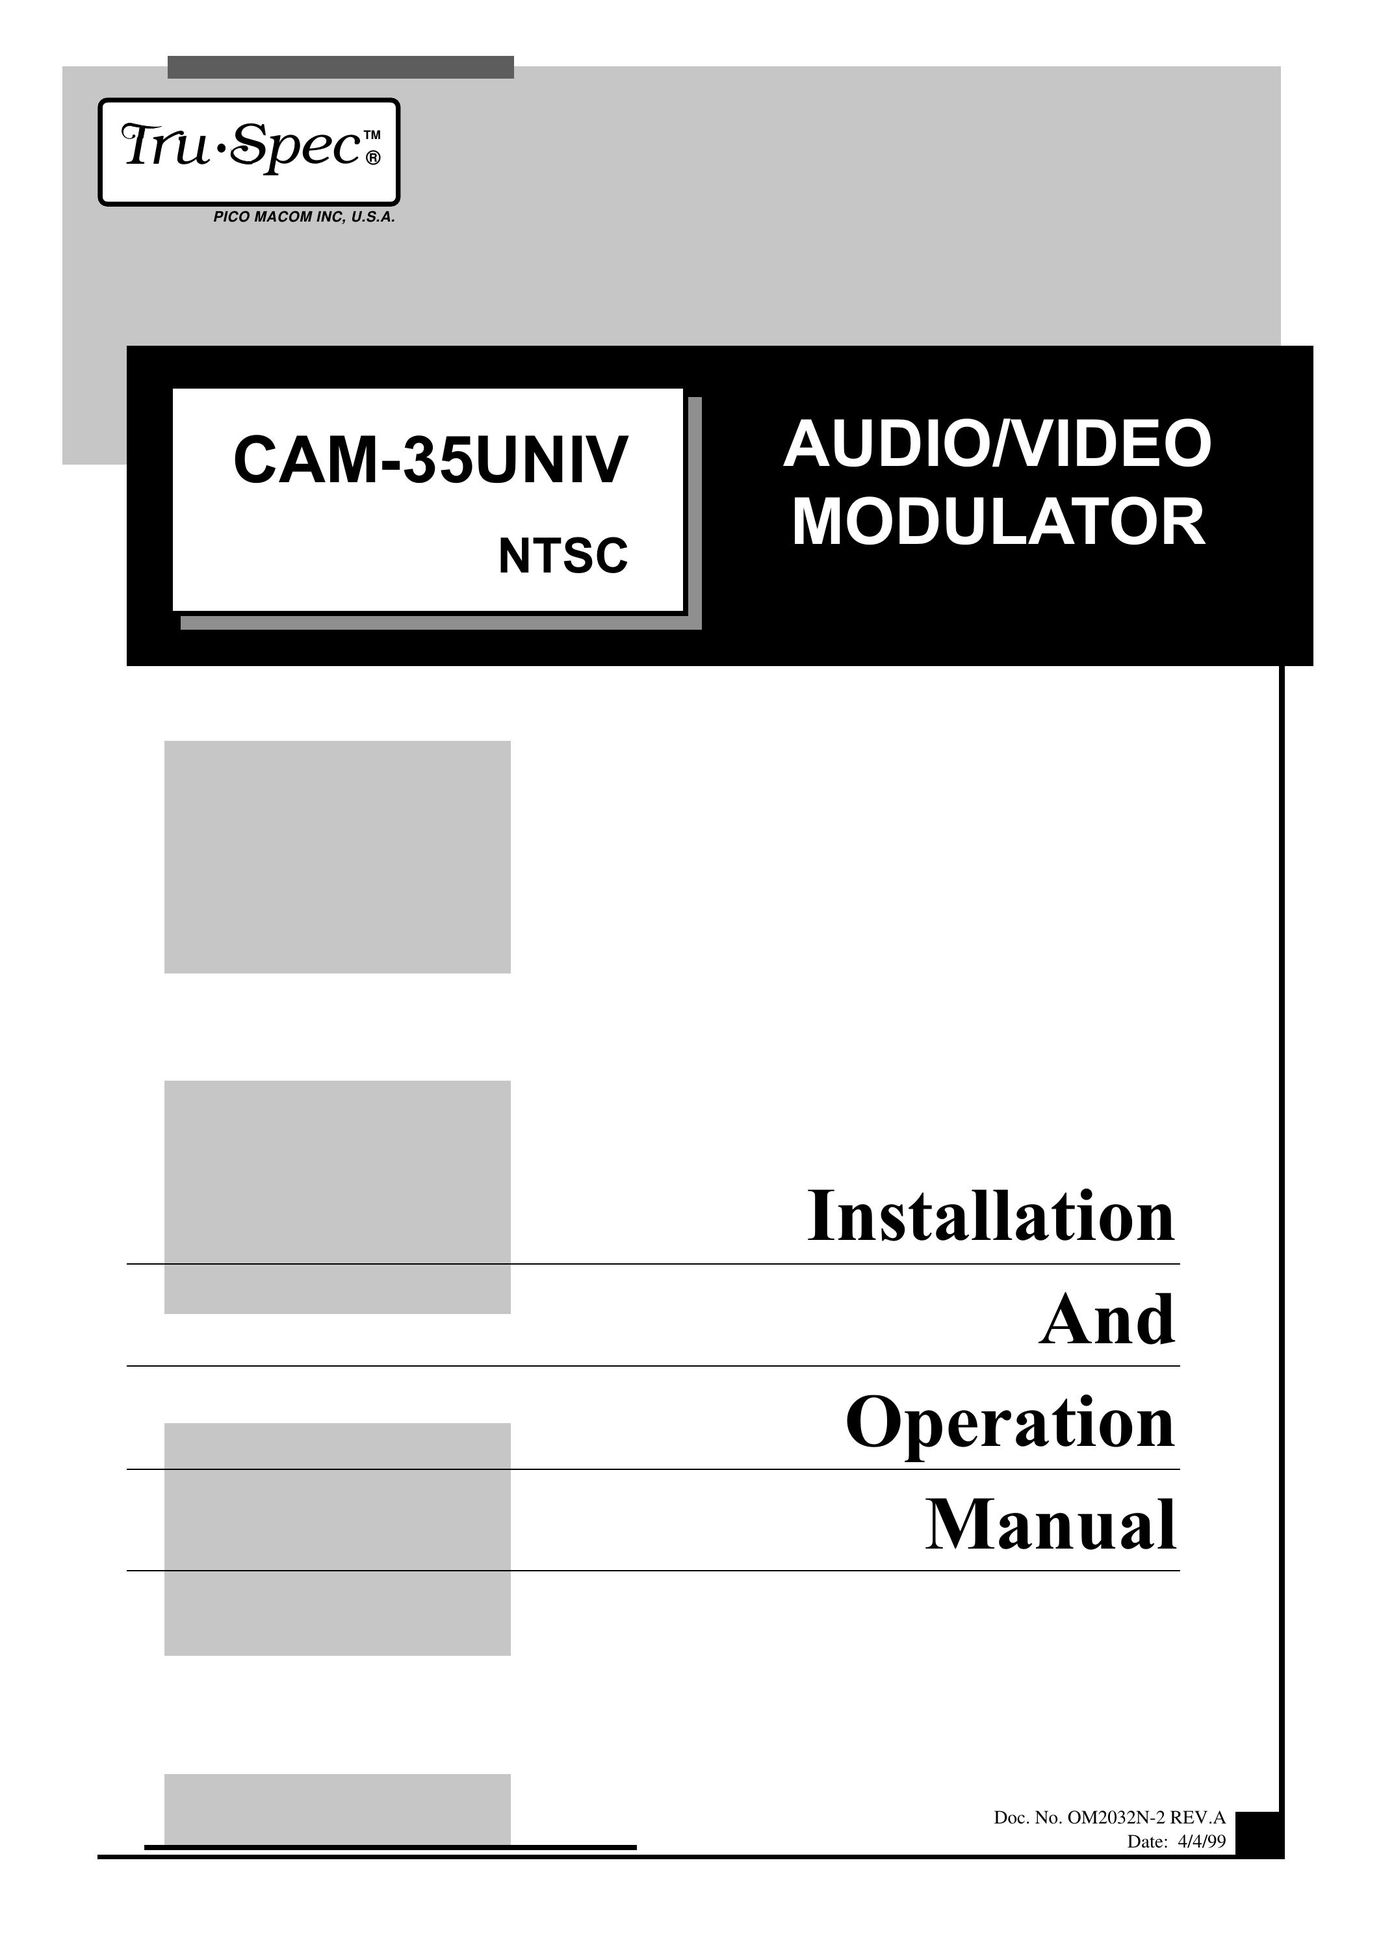 Pico Macom CAM-35UNIV Stereo Receiver User Manual